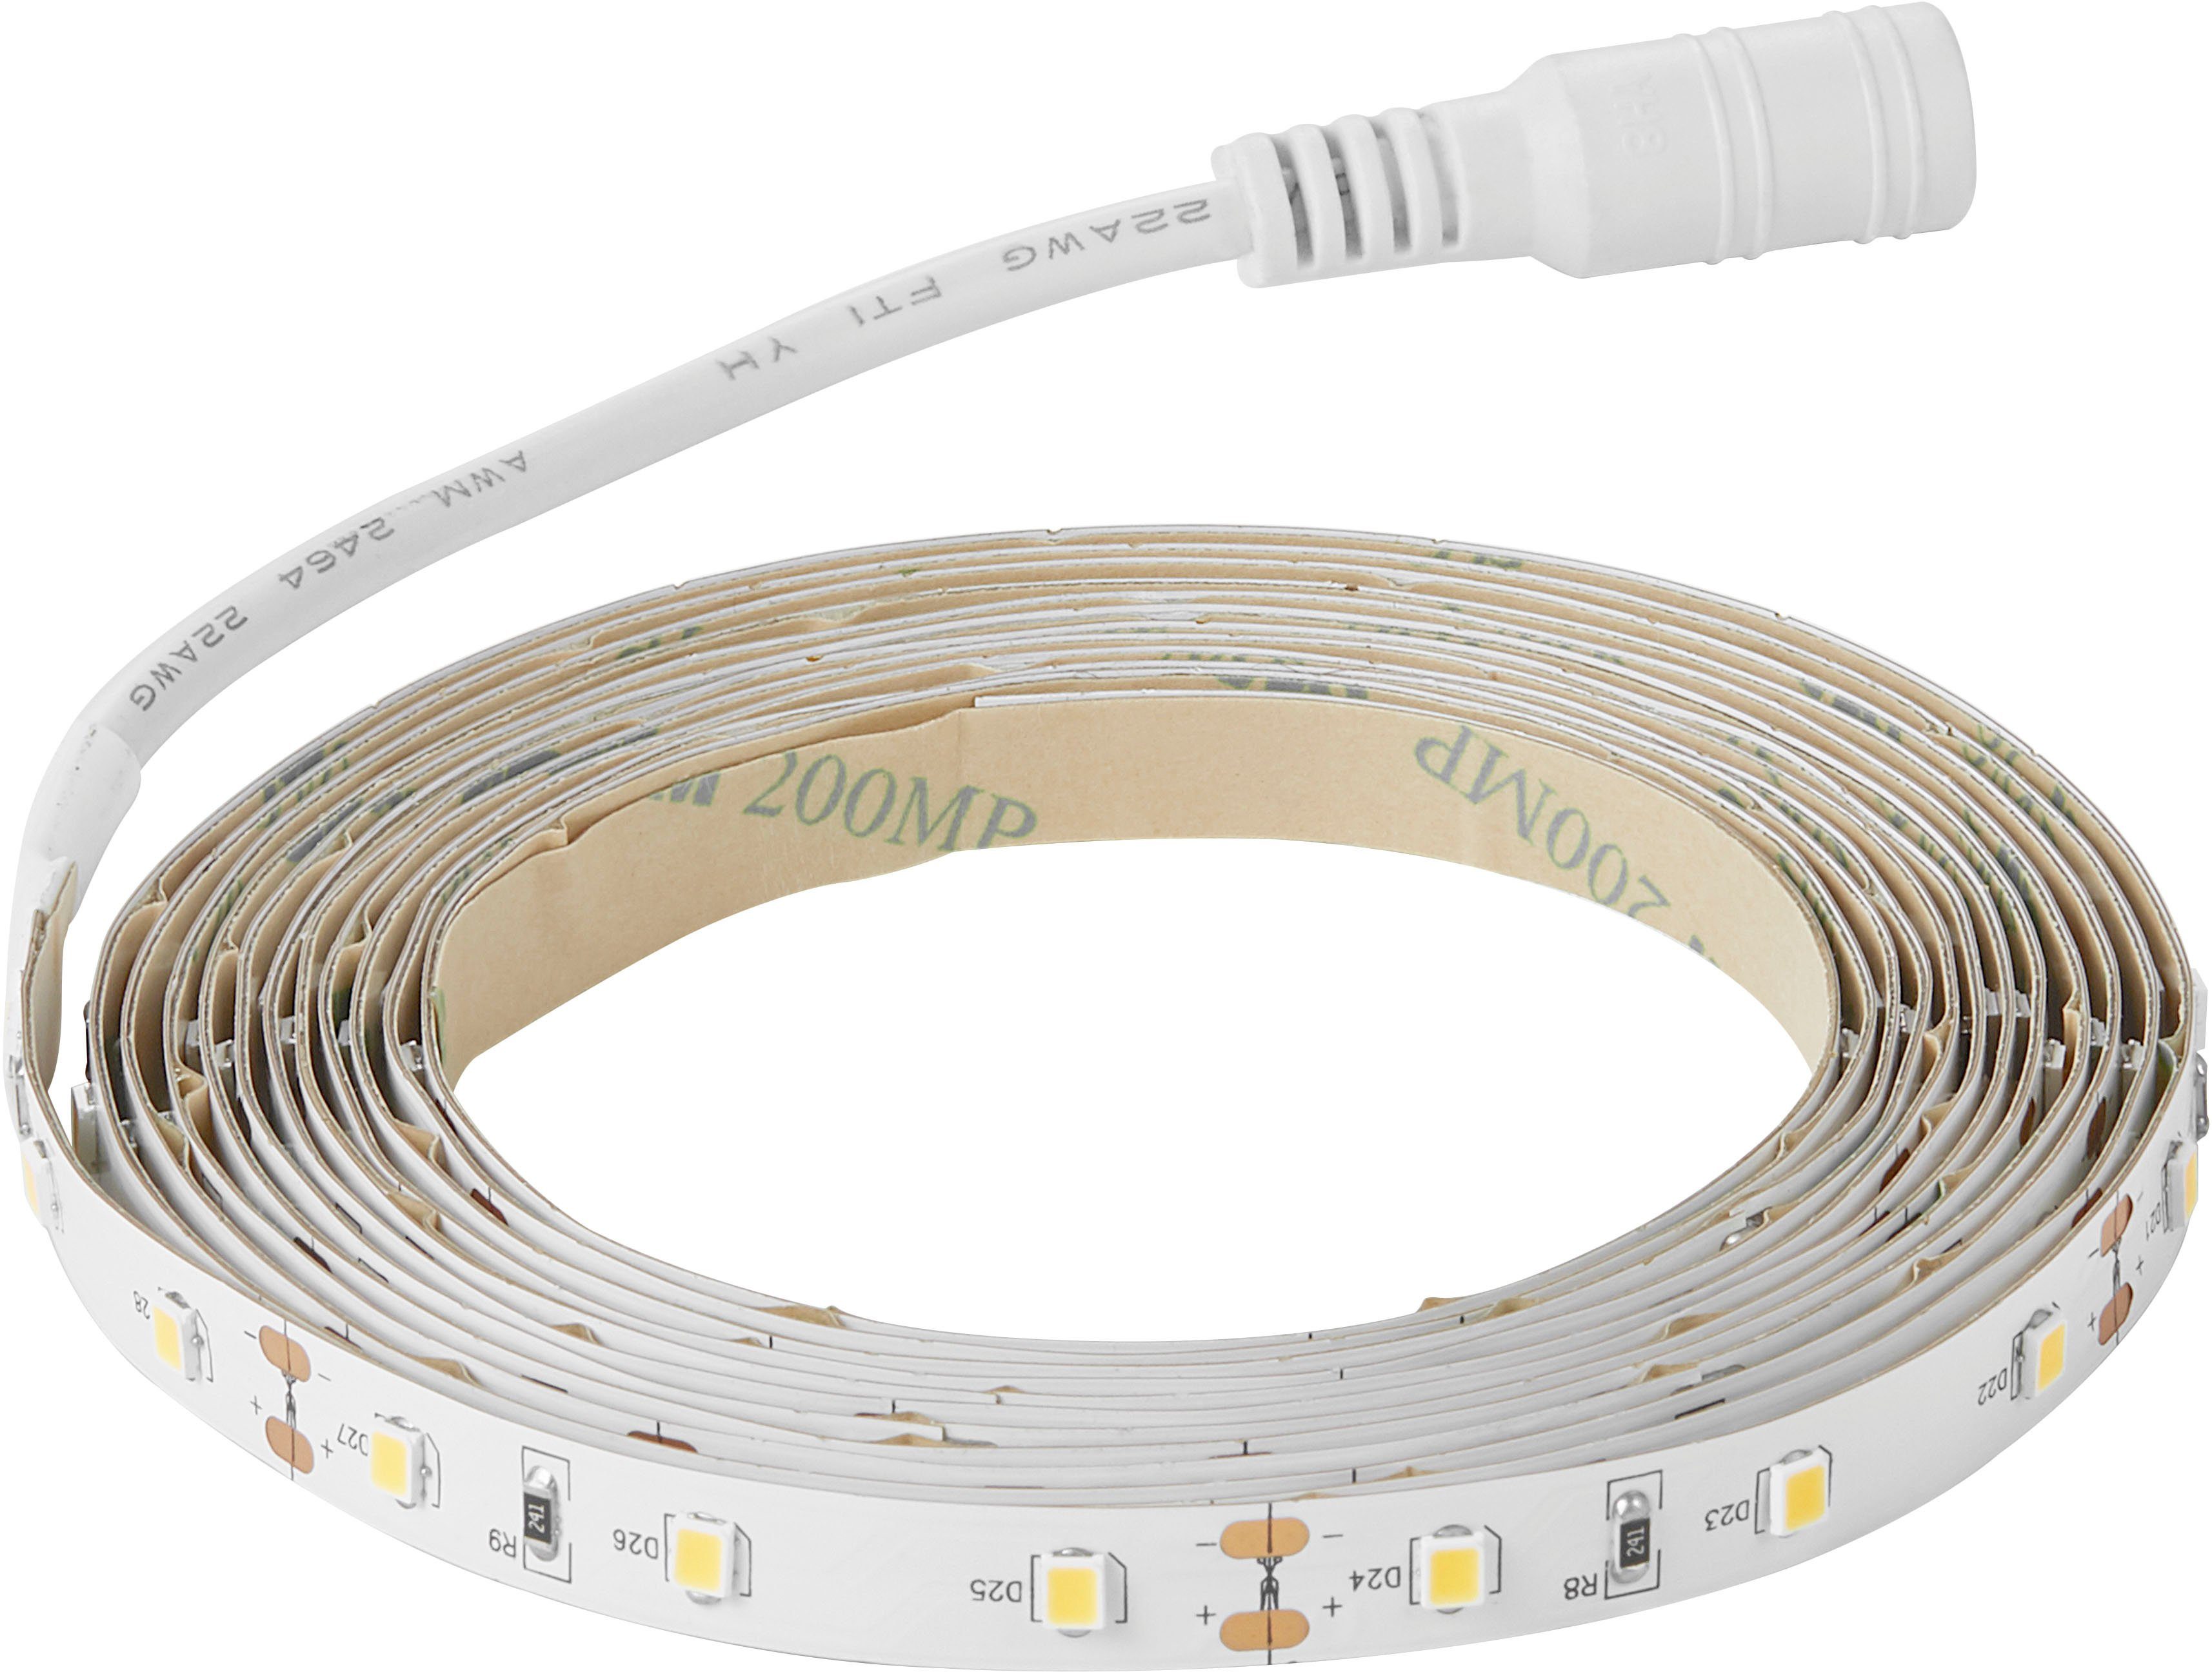 Nordlux LED Stripe Ledstrip, – wiederverwendbar anzubringen Klebeband auf Streifen, Einfach